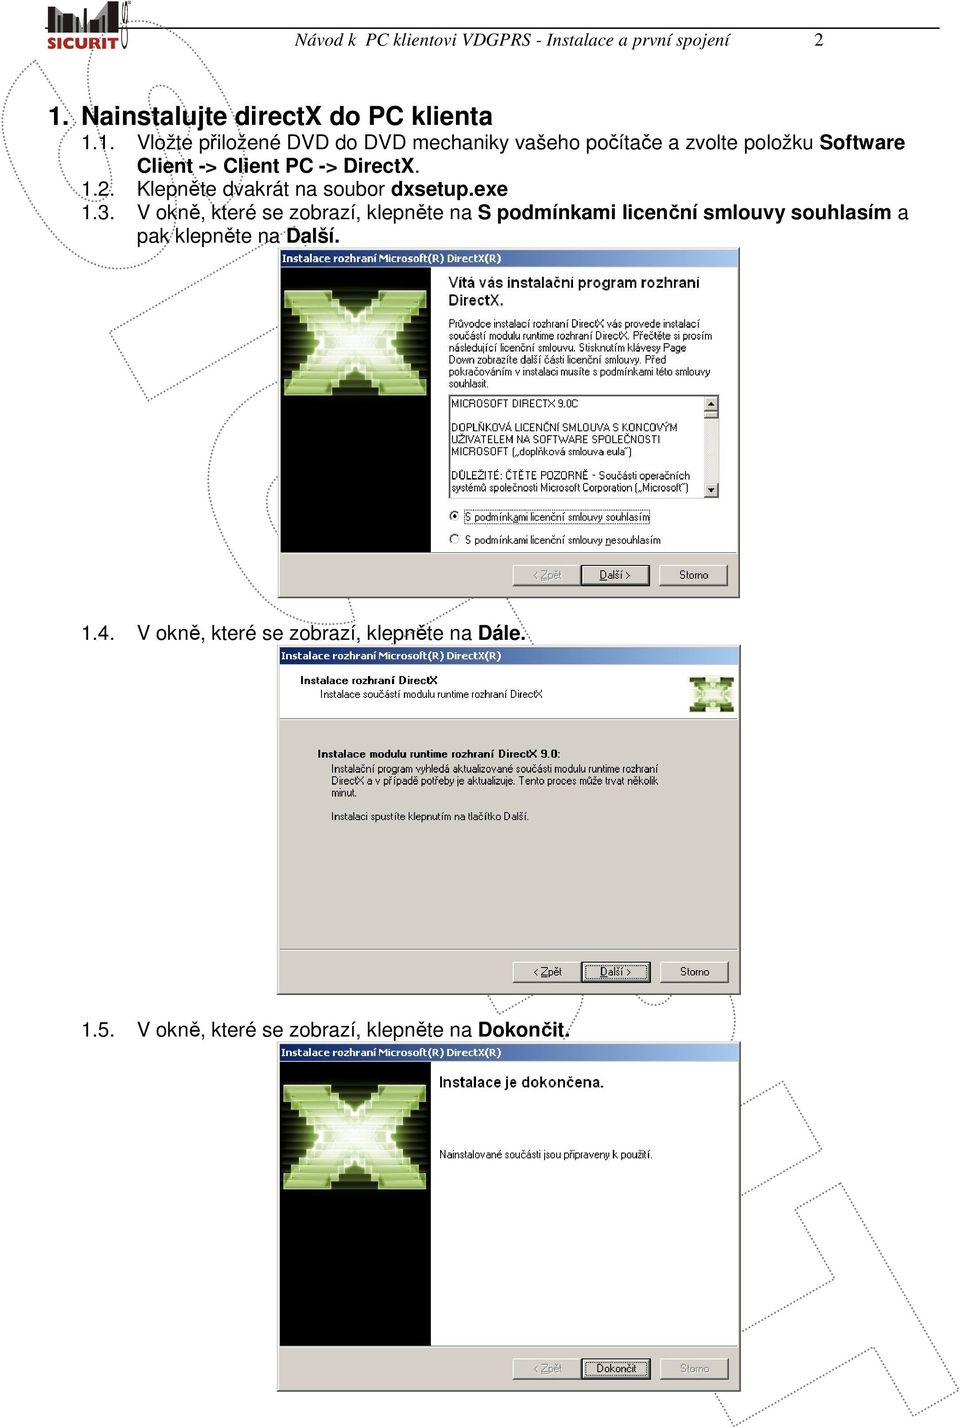 1. Vložte přiložené DVD do DVD mechaniky vašeho počítače a zvolte položku Software Client -> Client PC -> DirectX. 1.